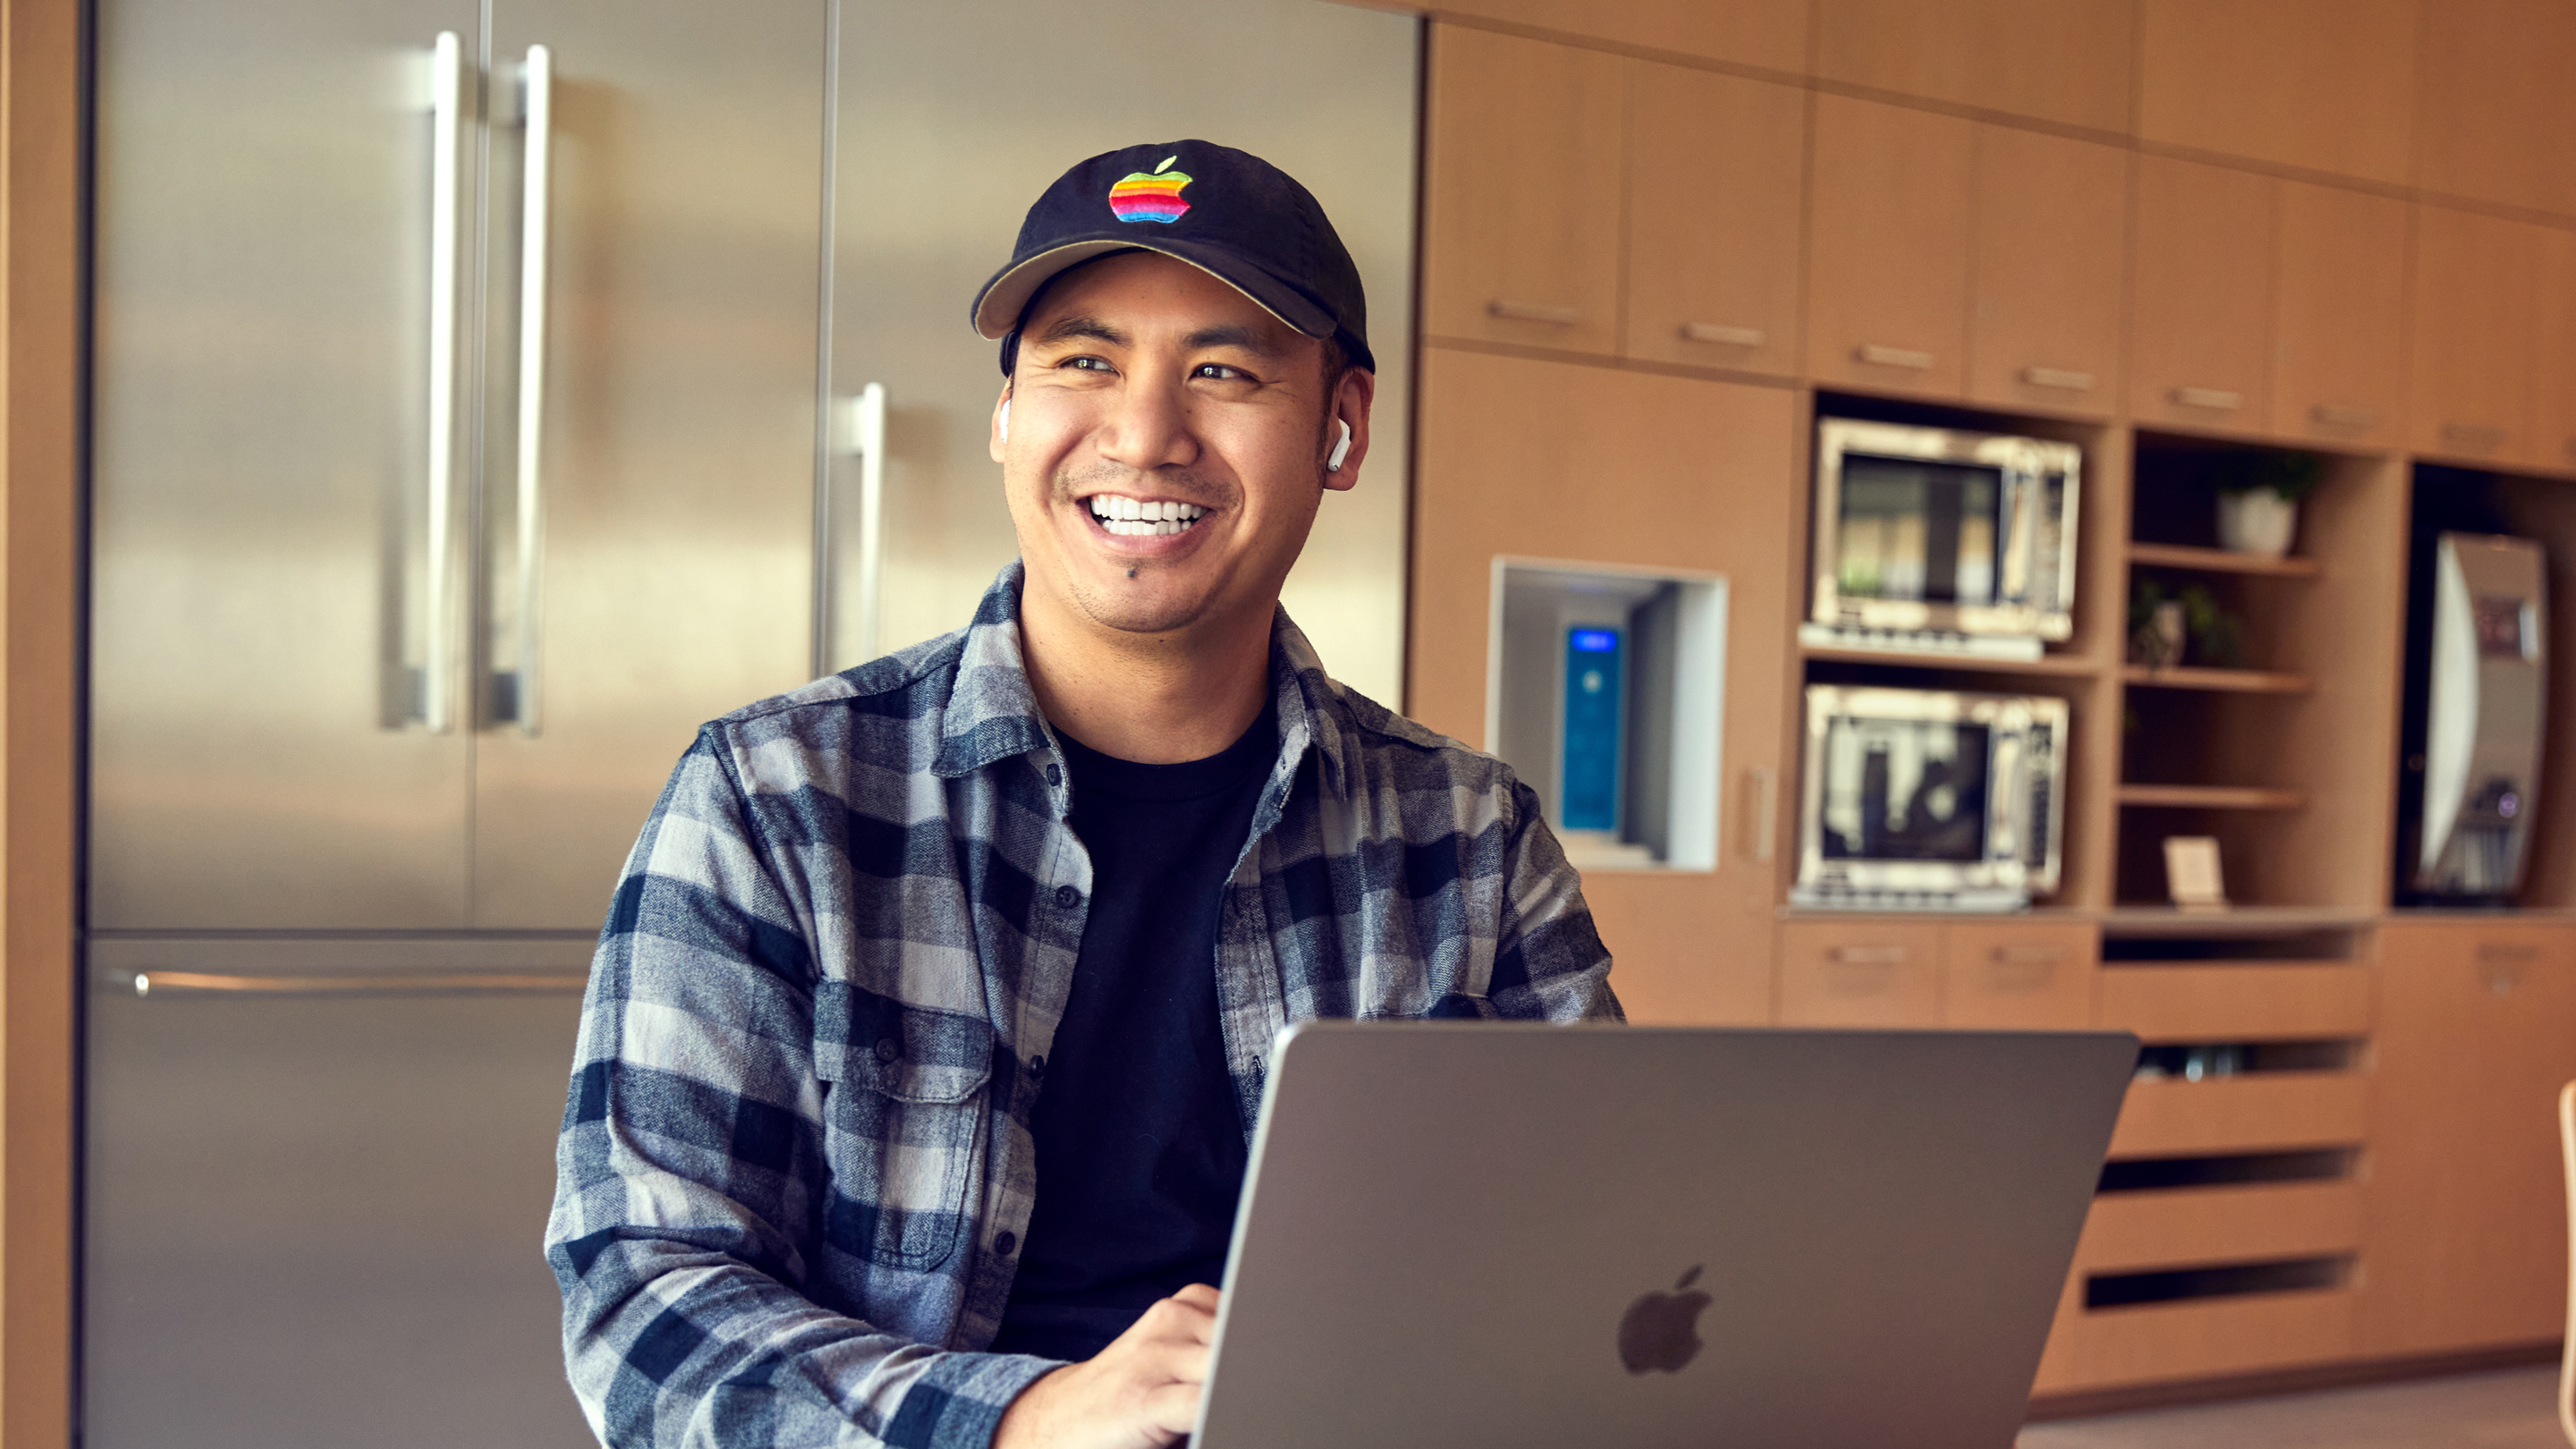 Een medewerker van Apple San Diego die lachend op zijn laptop zit te werken.